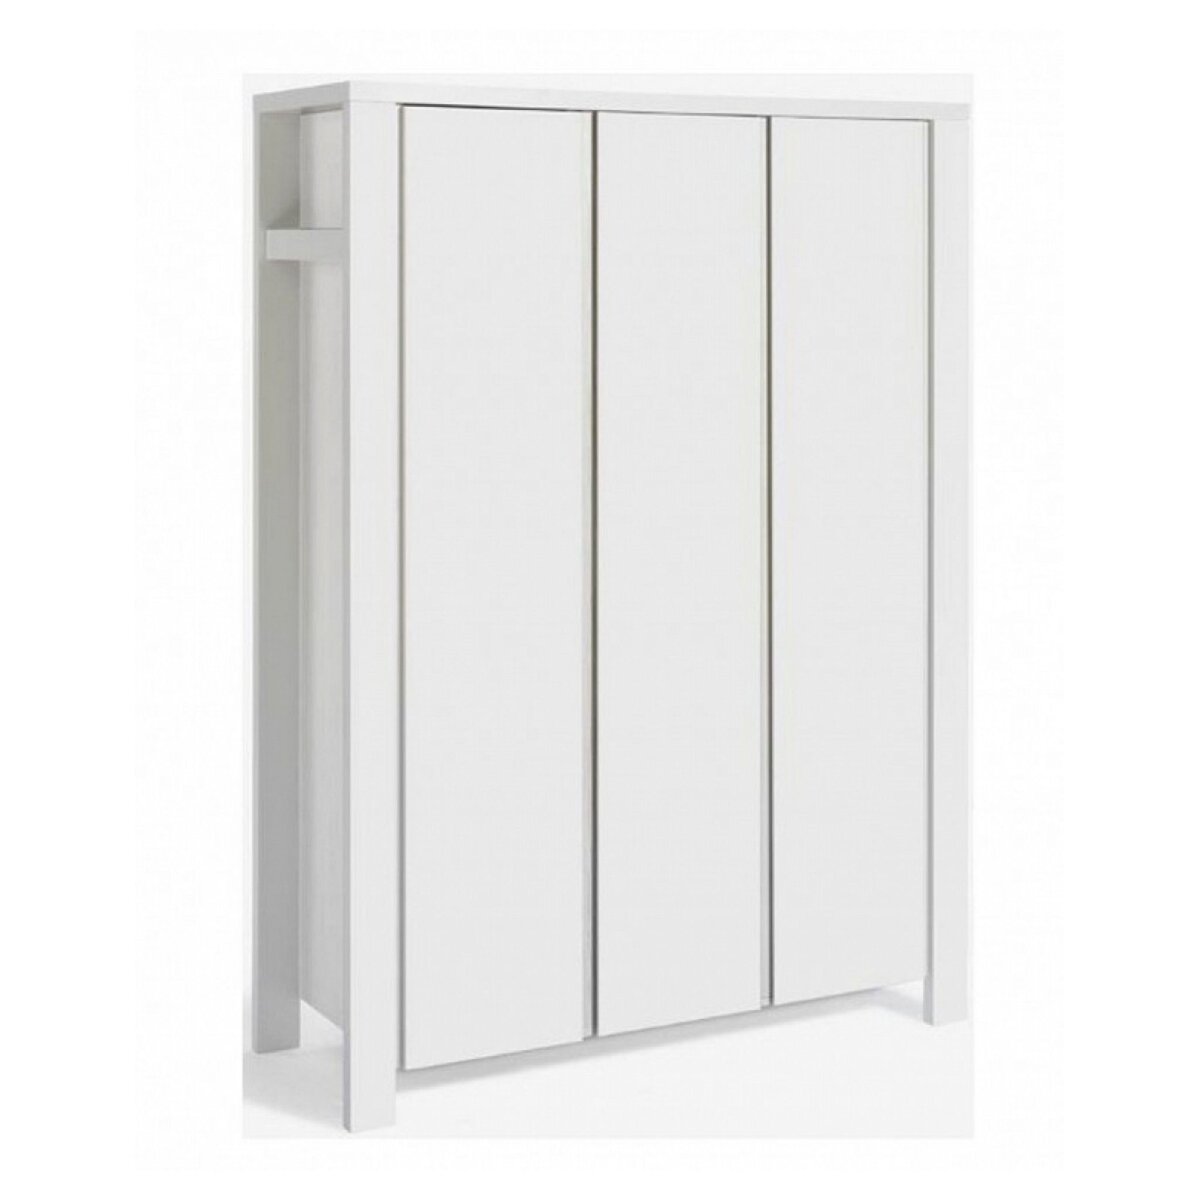 SCHARDT Armoire bébé 3 portes bois laqué blanc Milano White L 139 x H 195 x P 55 cm